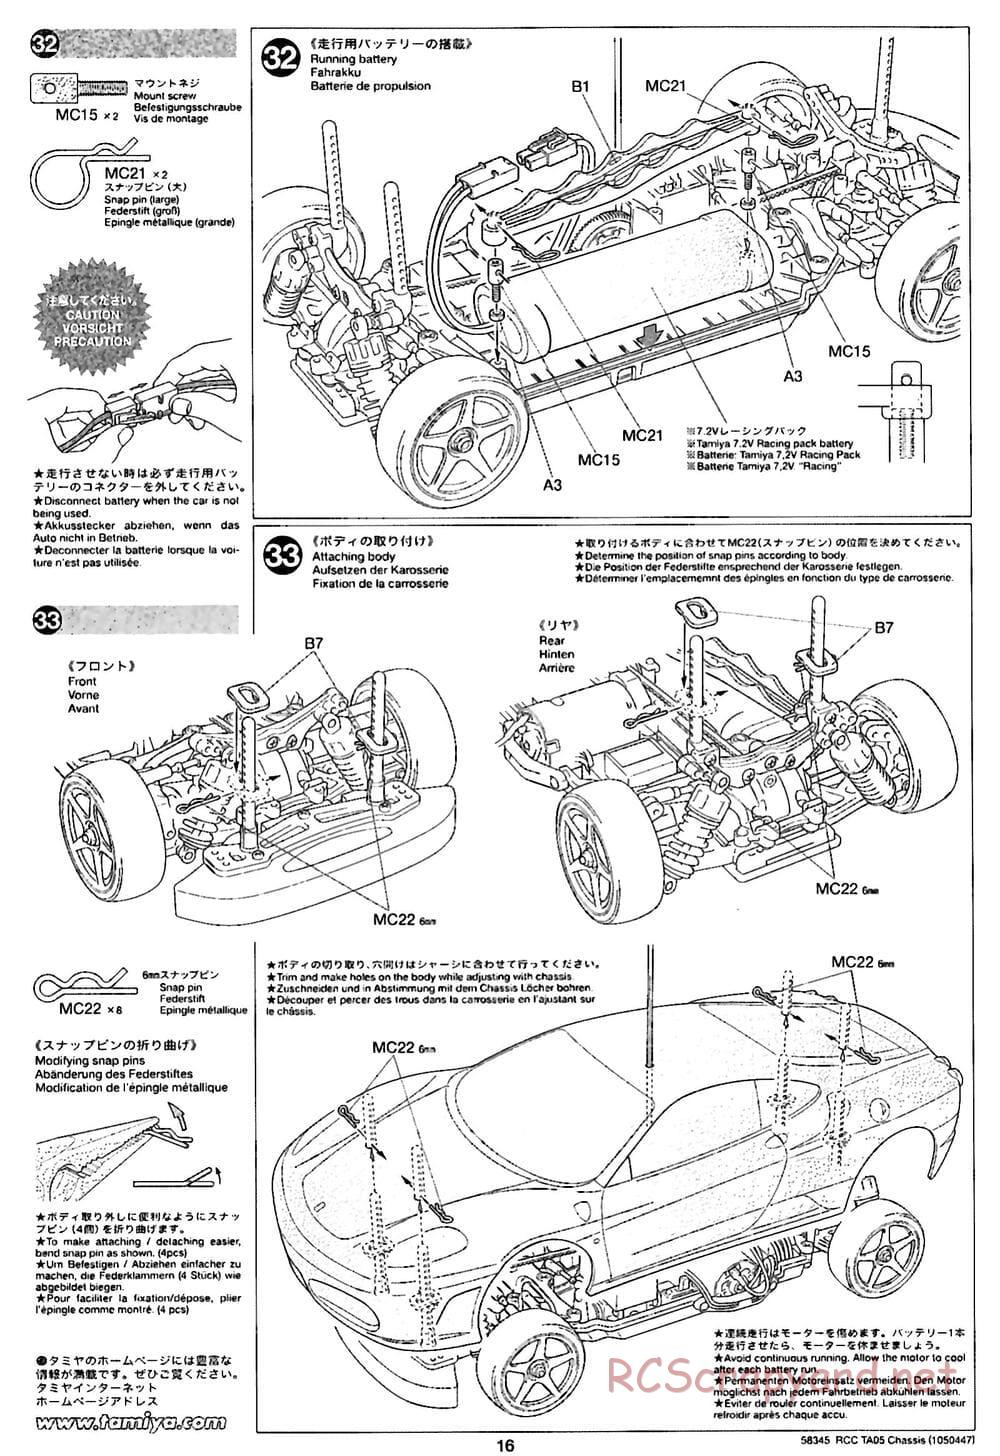 Tamiya - TA05 Chassis - Manual - Page 16